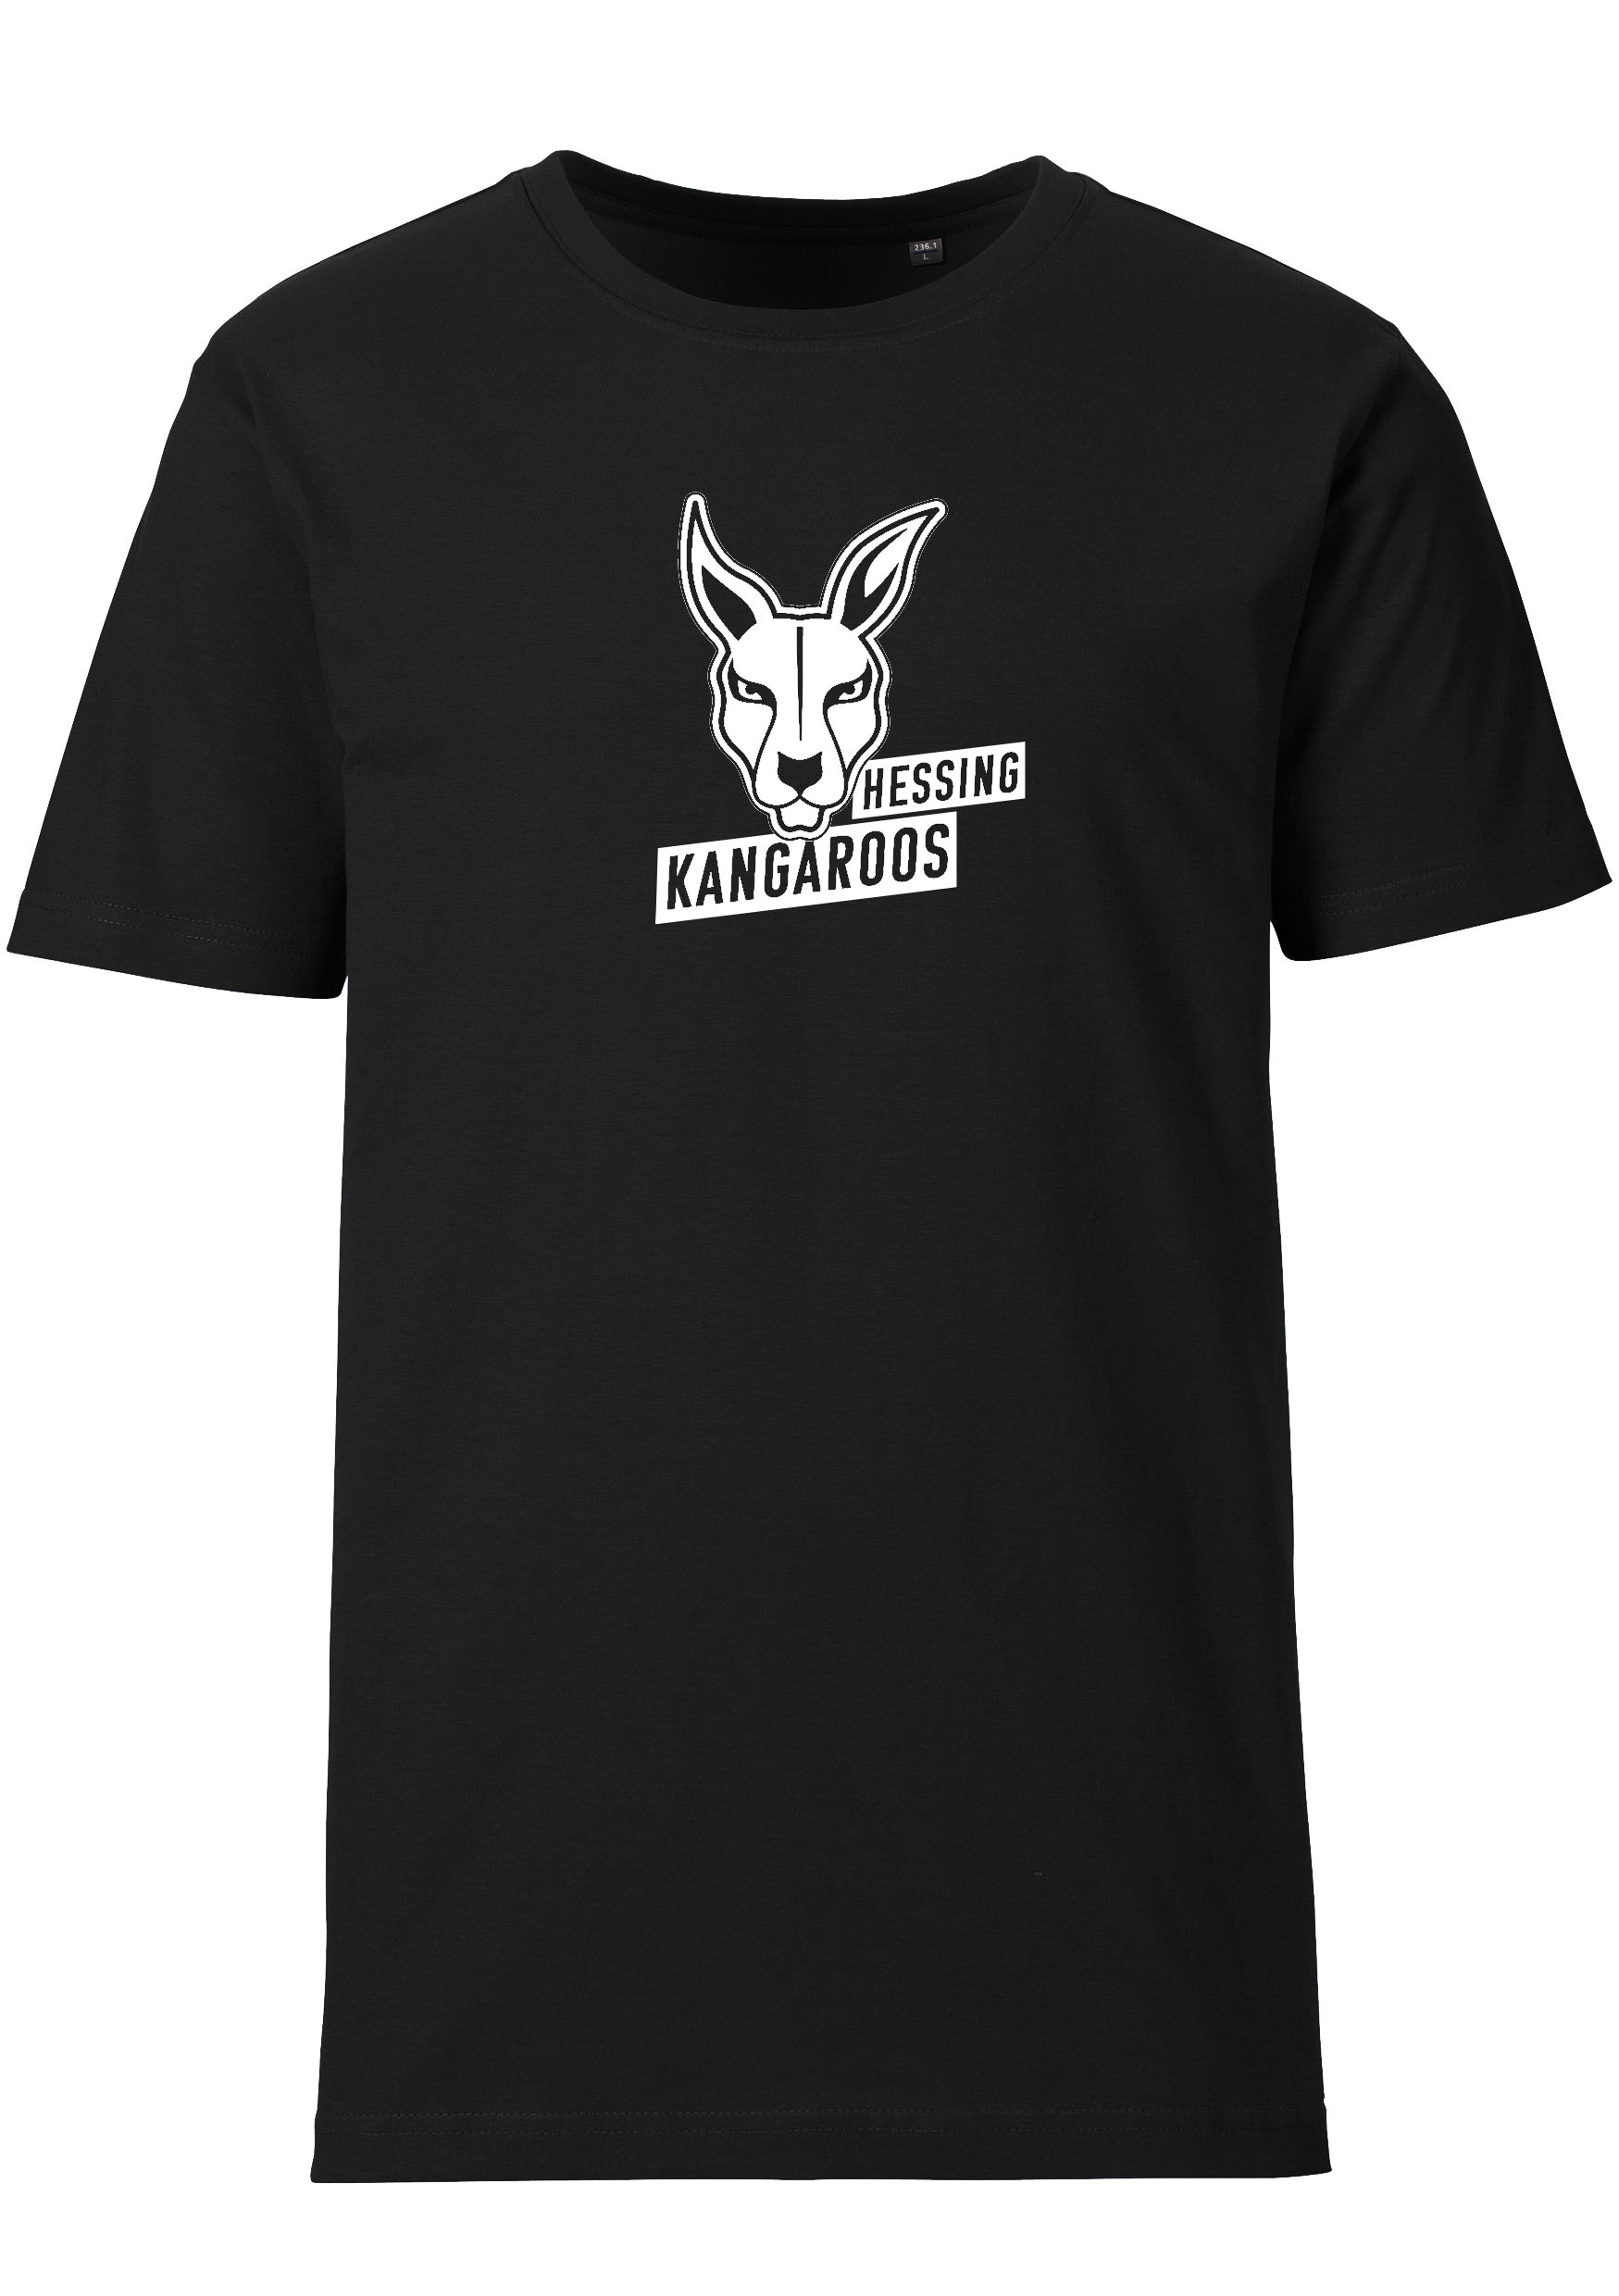 Hessing Kangaroos T-Shirt